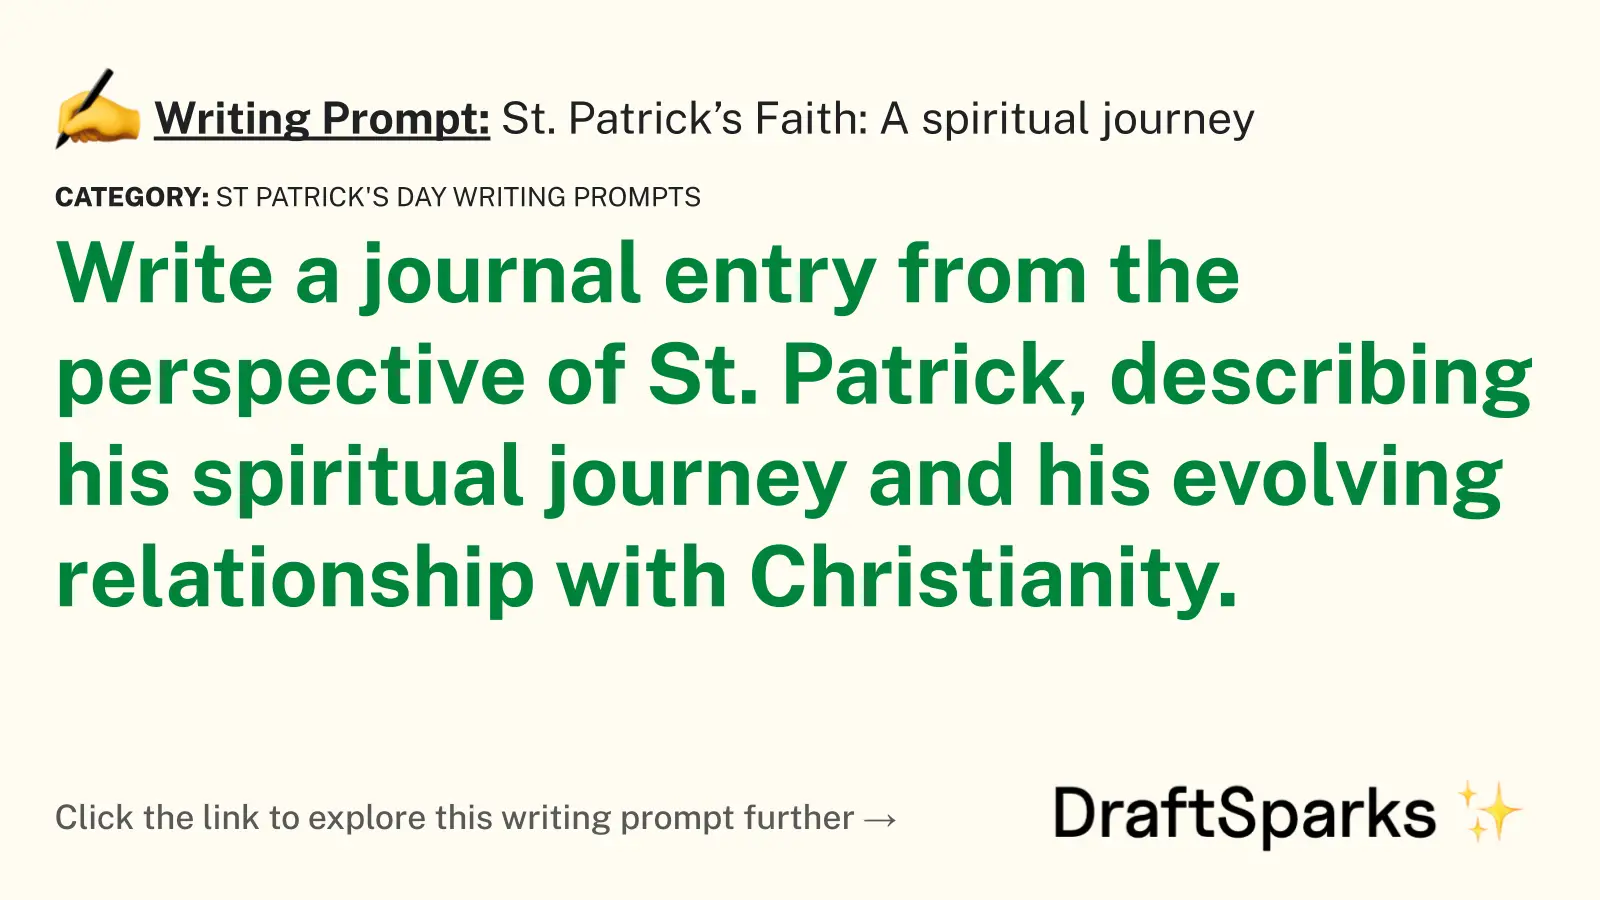 St. Patrick’s Faith: A spiritual journey